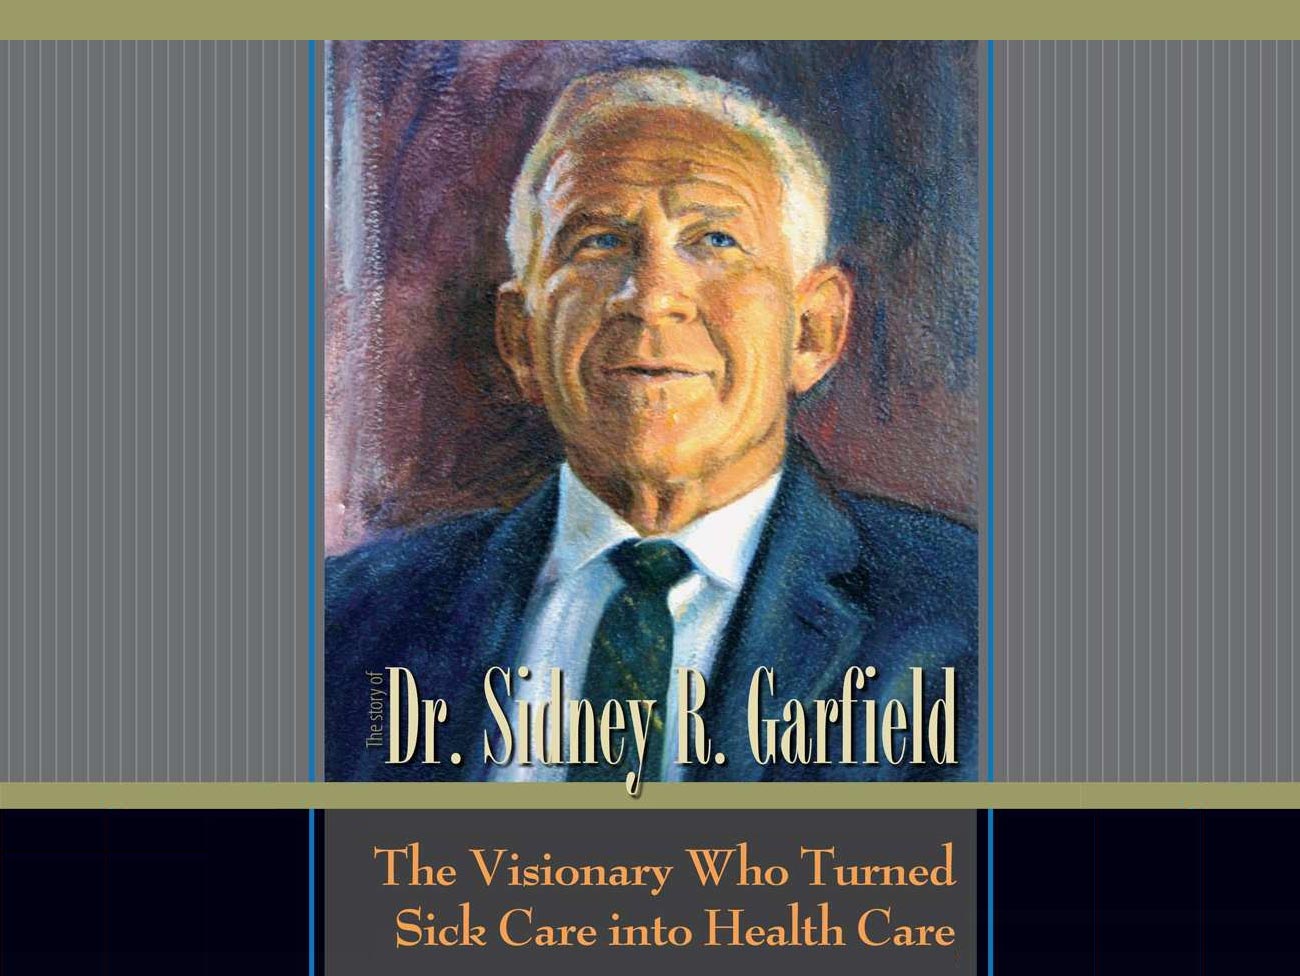 封面:《西德尼·r·加菲尔德医生的故事——把疾病治疗变成医疗保健的远见者》，配以加菲尔德医生的彩色插图。